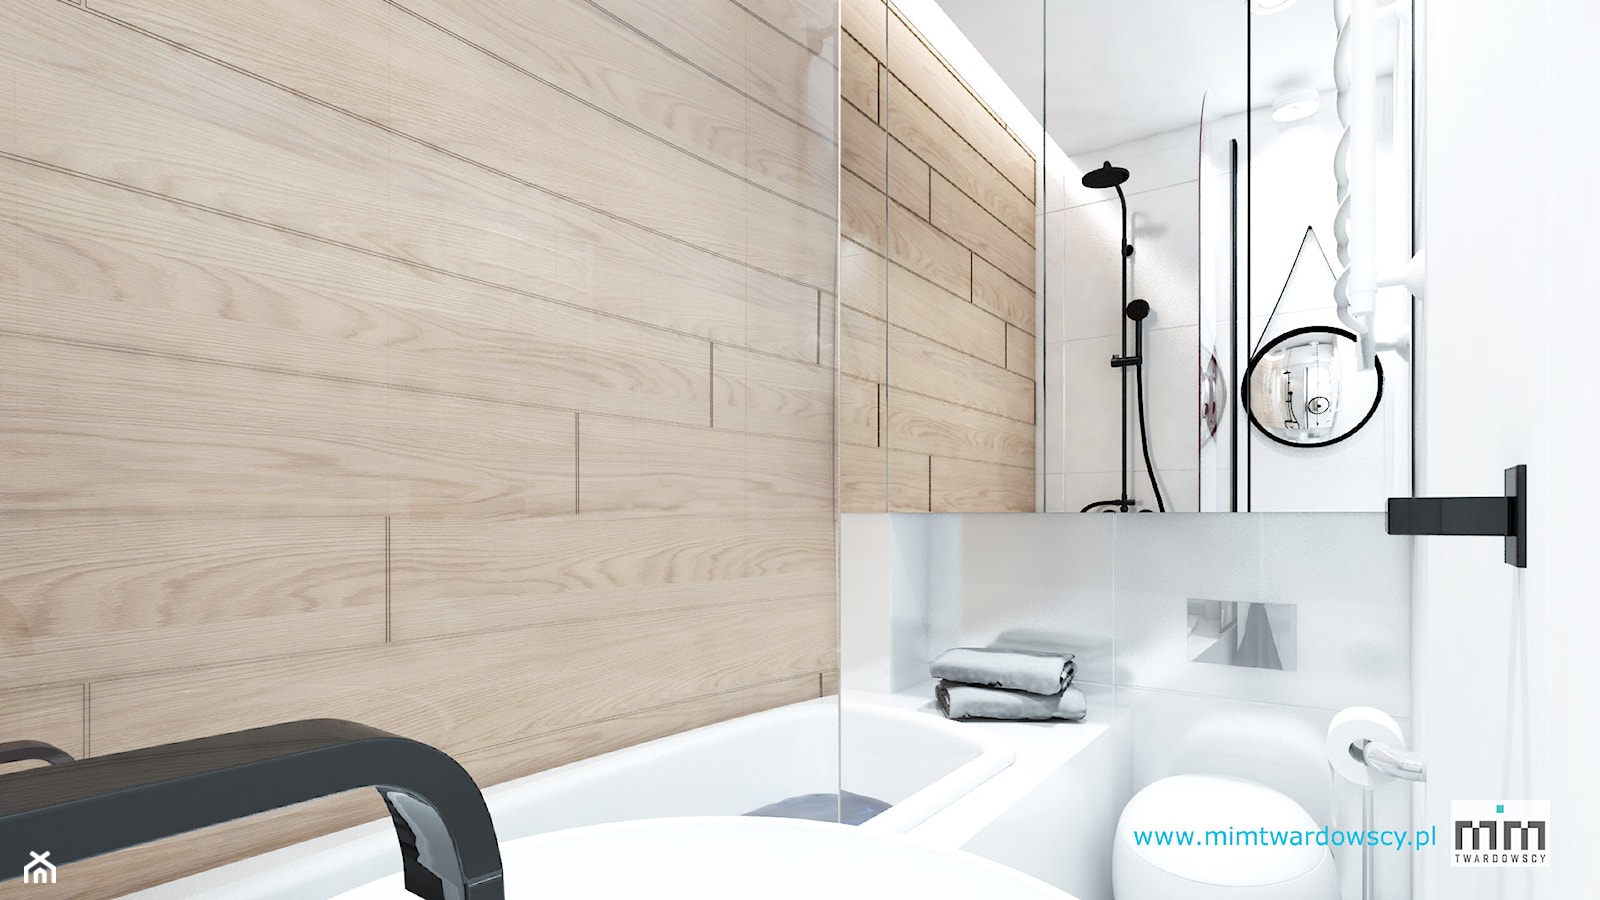 BED minimalizm ocieplony drewnem :) - Łazienka, styl minimalistyczny - zdjęcie od mimtwardowscy - Homebook